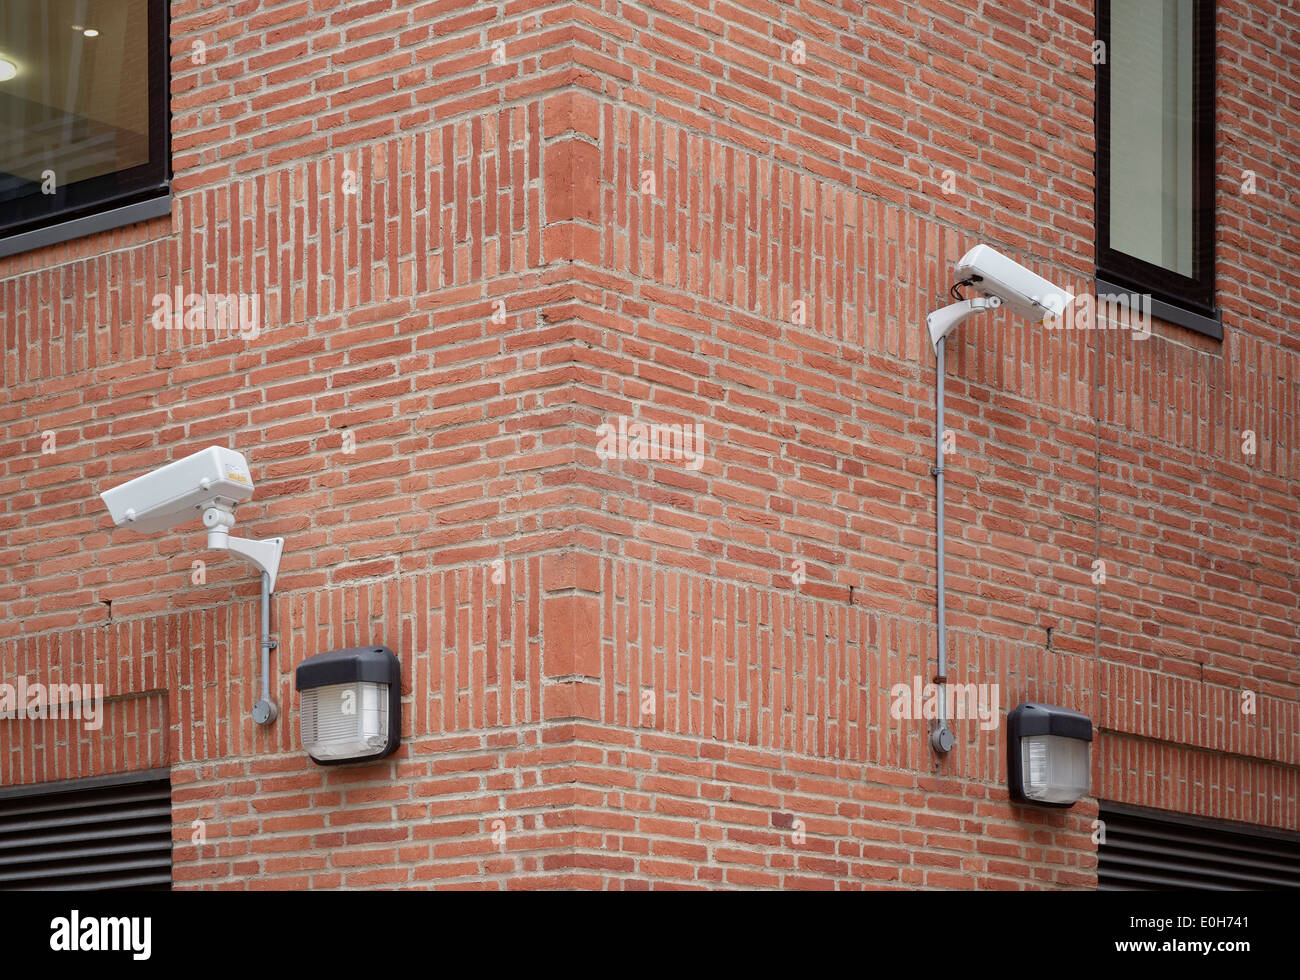 Telecamera di sorveglianza attaccato ad un rosso un muro di mattoni, vicino alla Cattedrale di San Paolo, City of London, England, Regno Unito, Europa Foto Stock